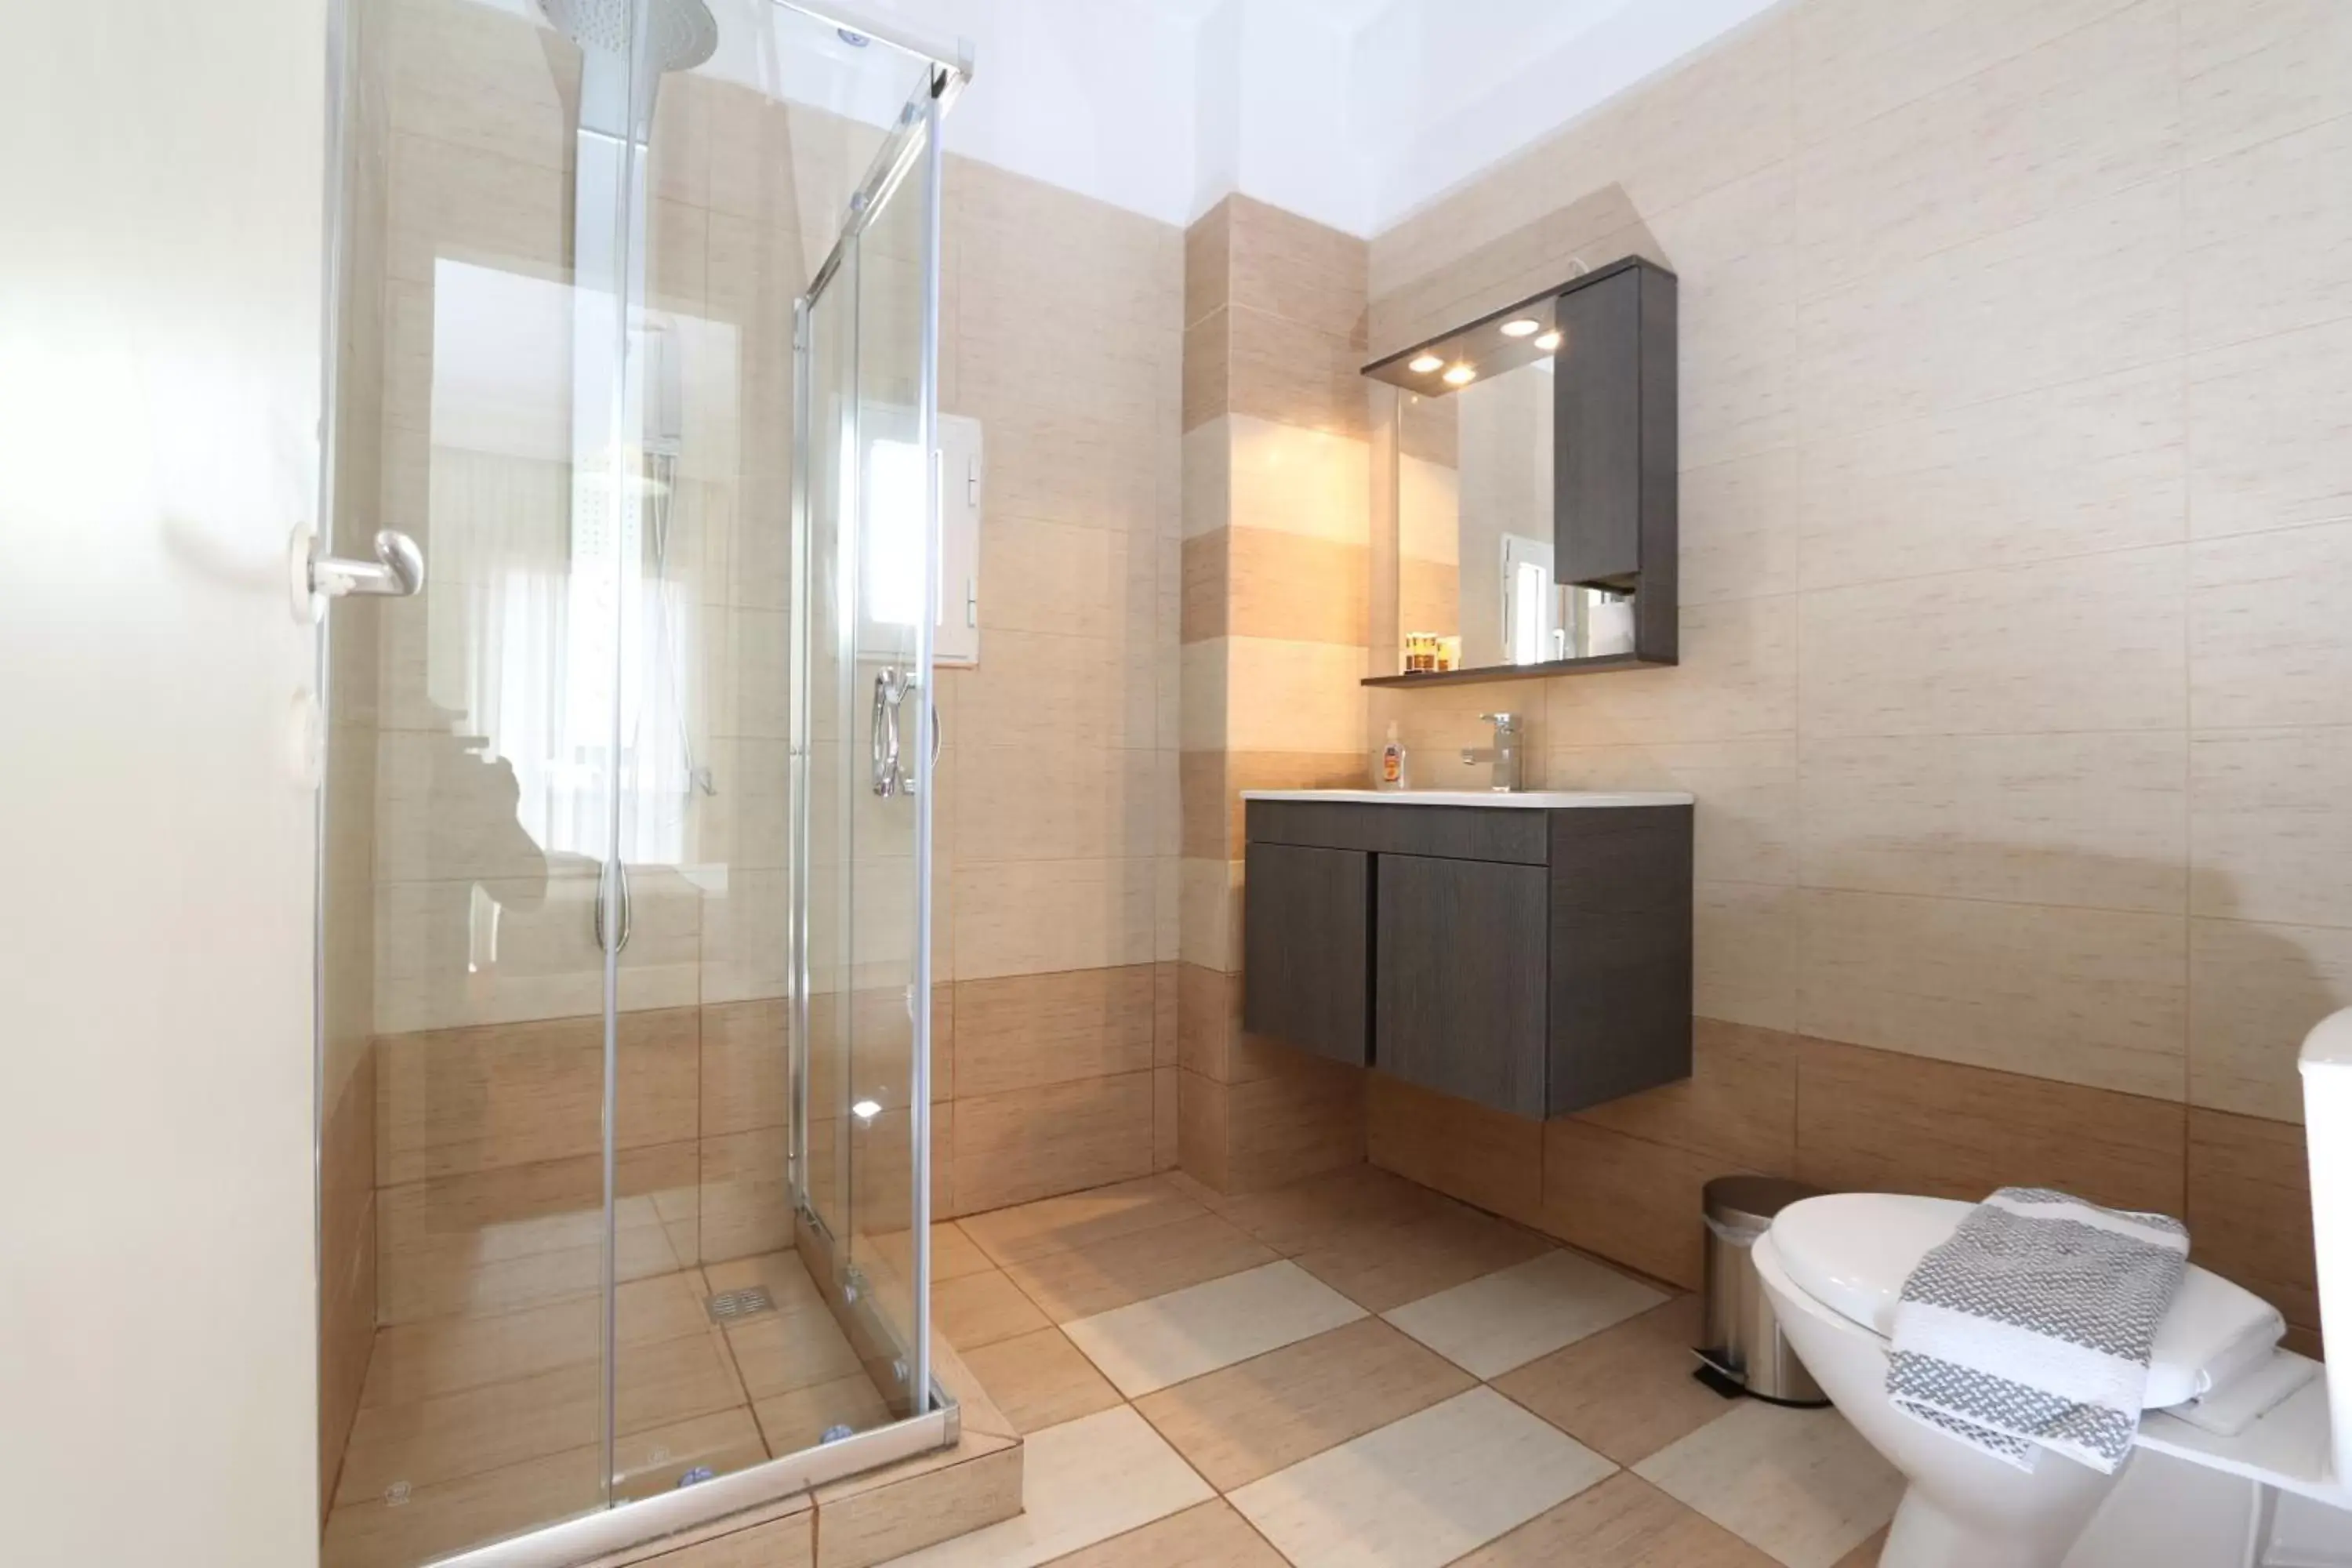 Area and facilities, Bathroom in Athens Delta Hotel